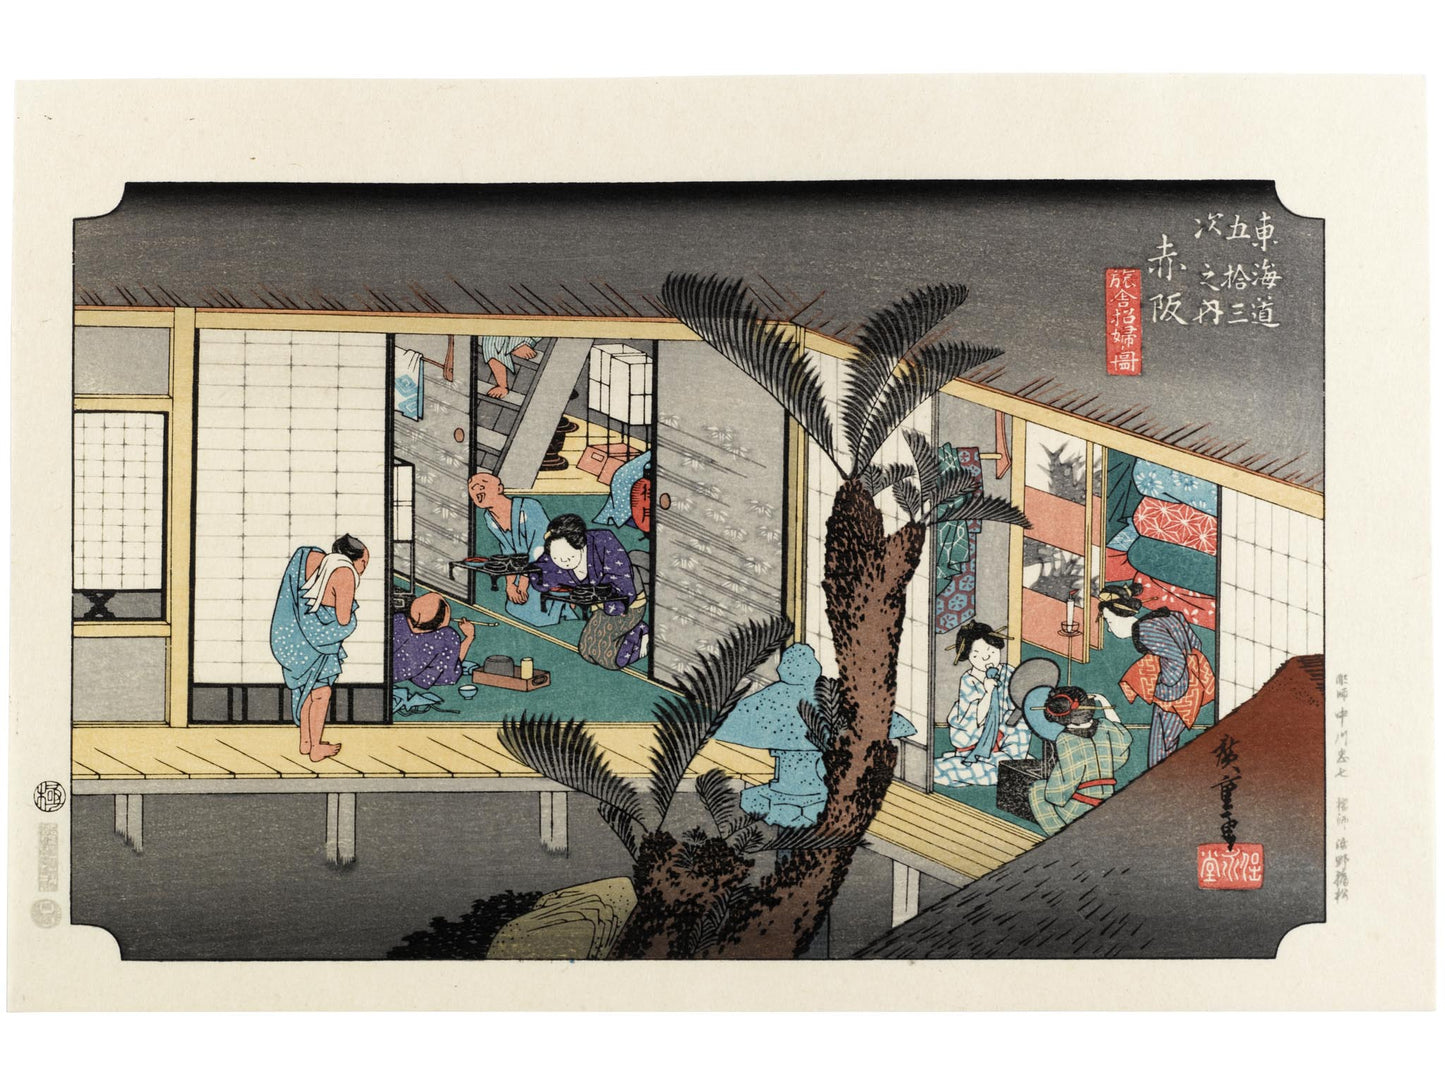 estampe japonaise intérieur d'une auberge avec voyageurs et geishas